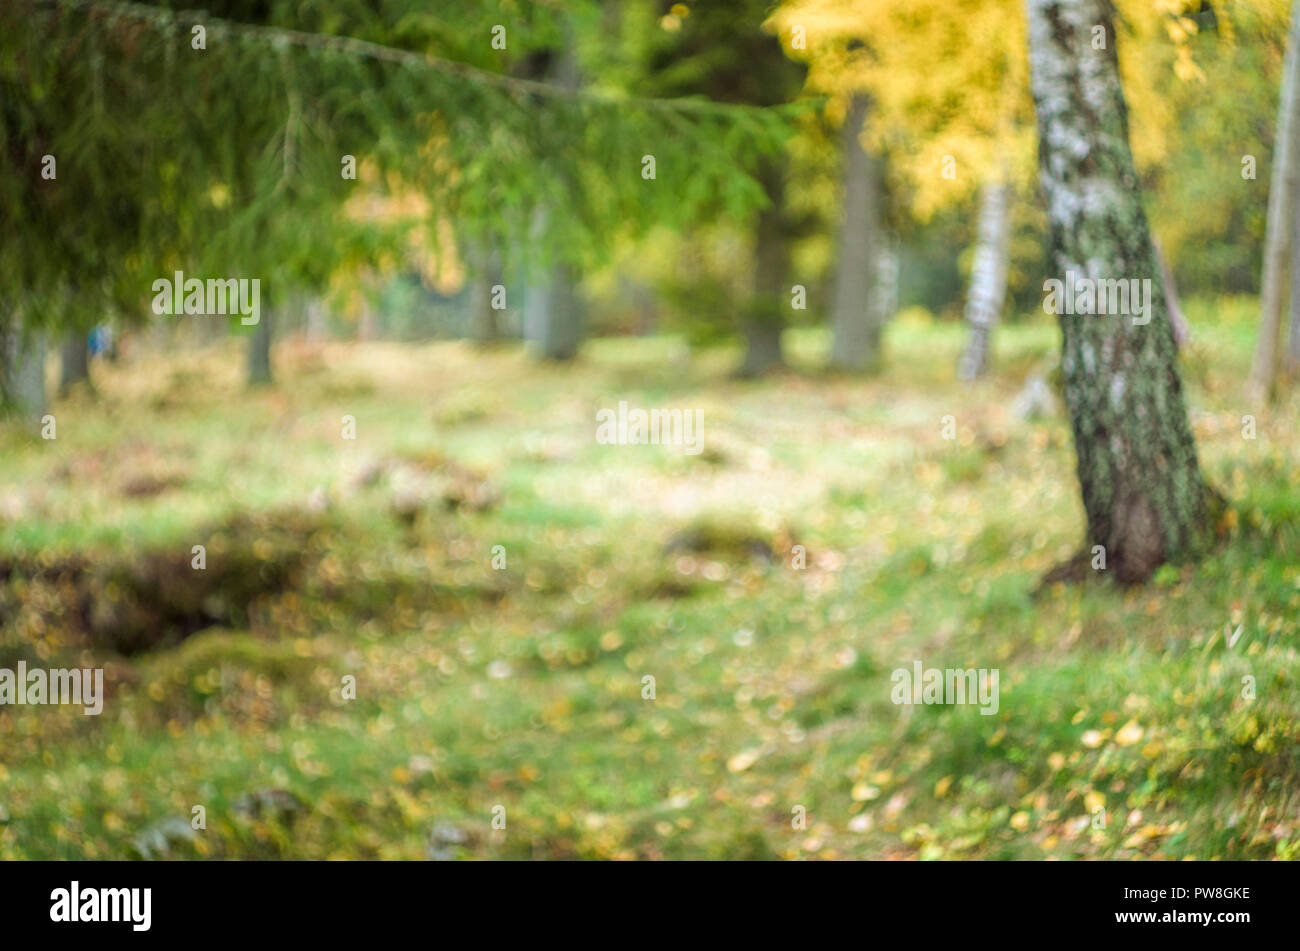 Arrière-plan flou- automne paysage norvégien (forêt boréale avec arbres jaunes). Banque D'Images